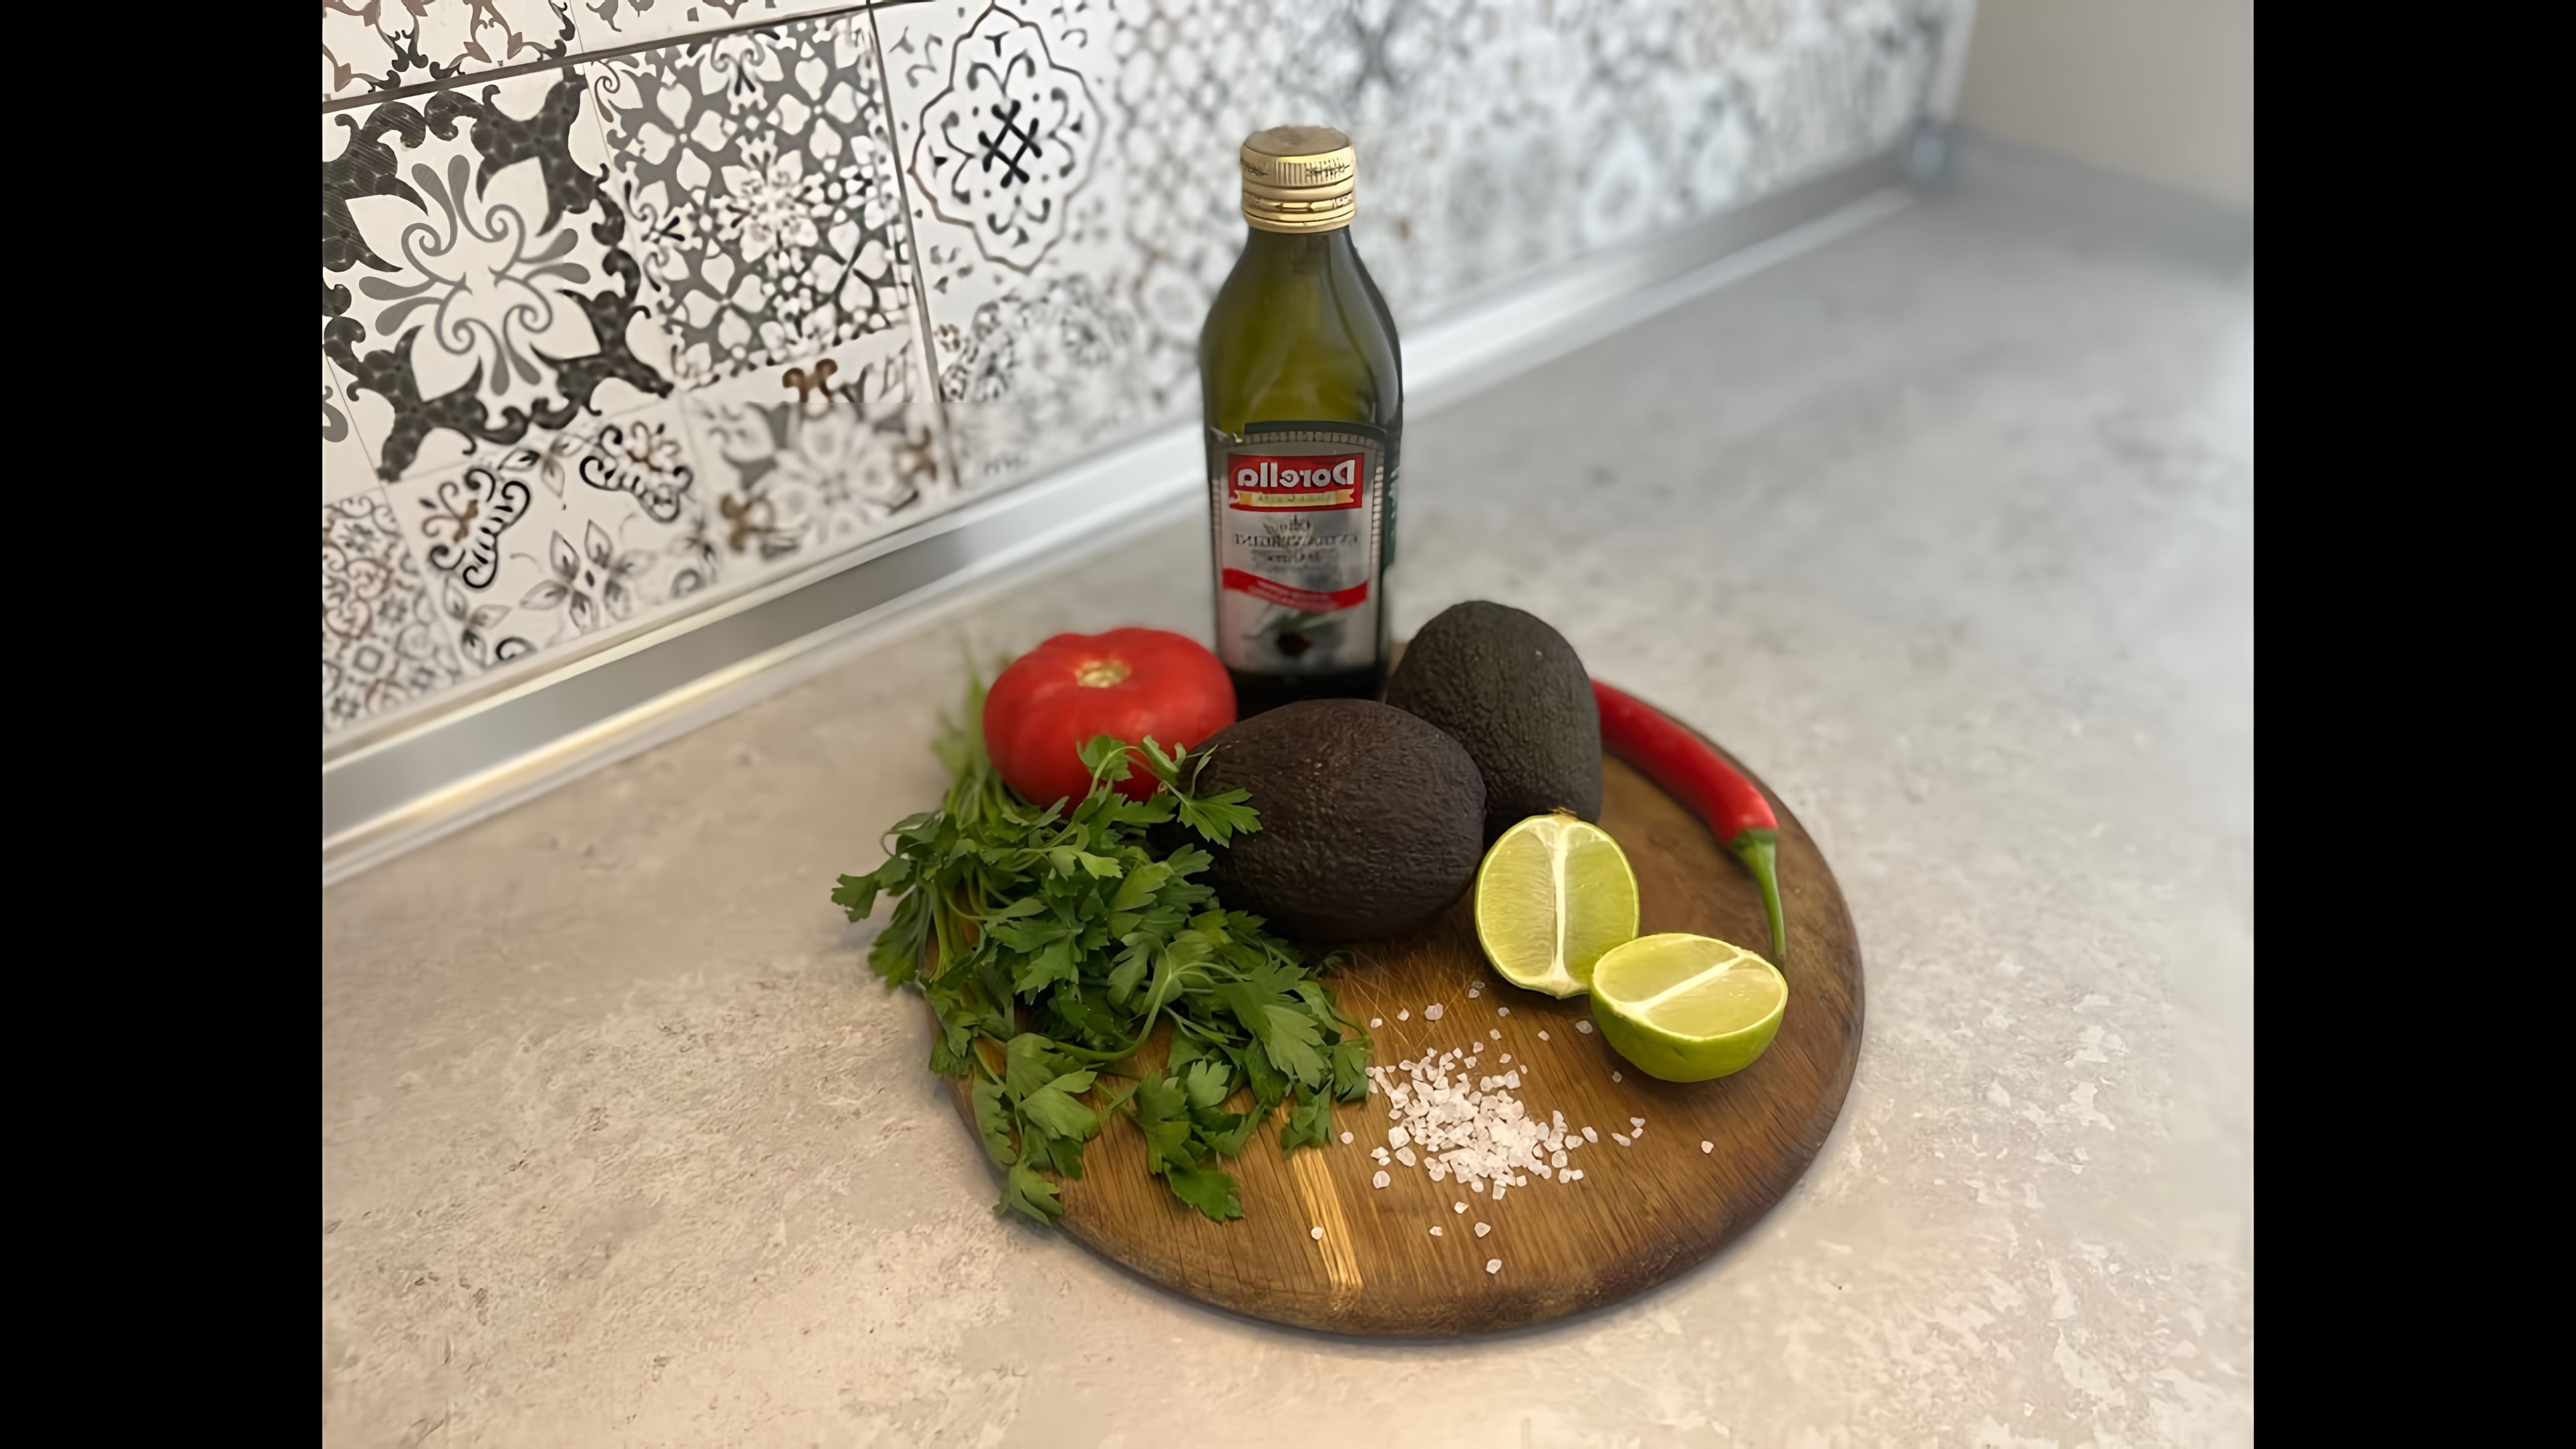 Рецепт гуакамоле - это видео-ролик, который демонстрирует процесс приготовления популярного мексиканского соуса